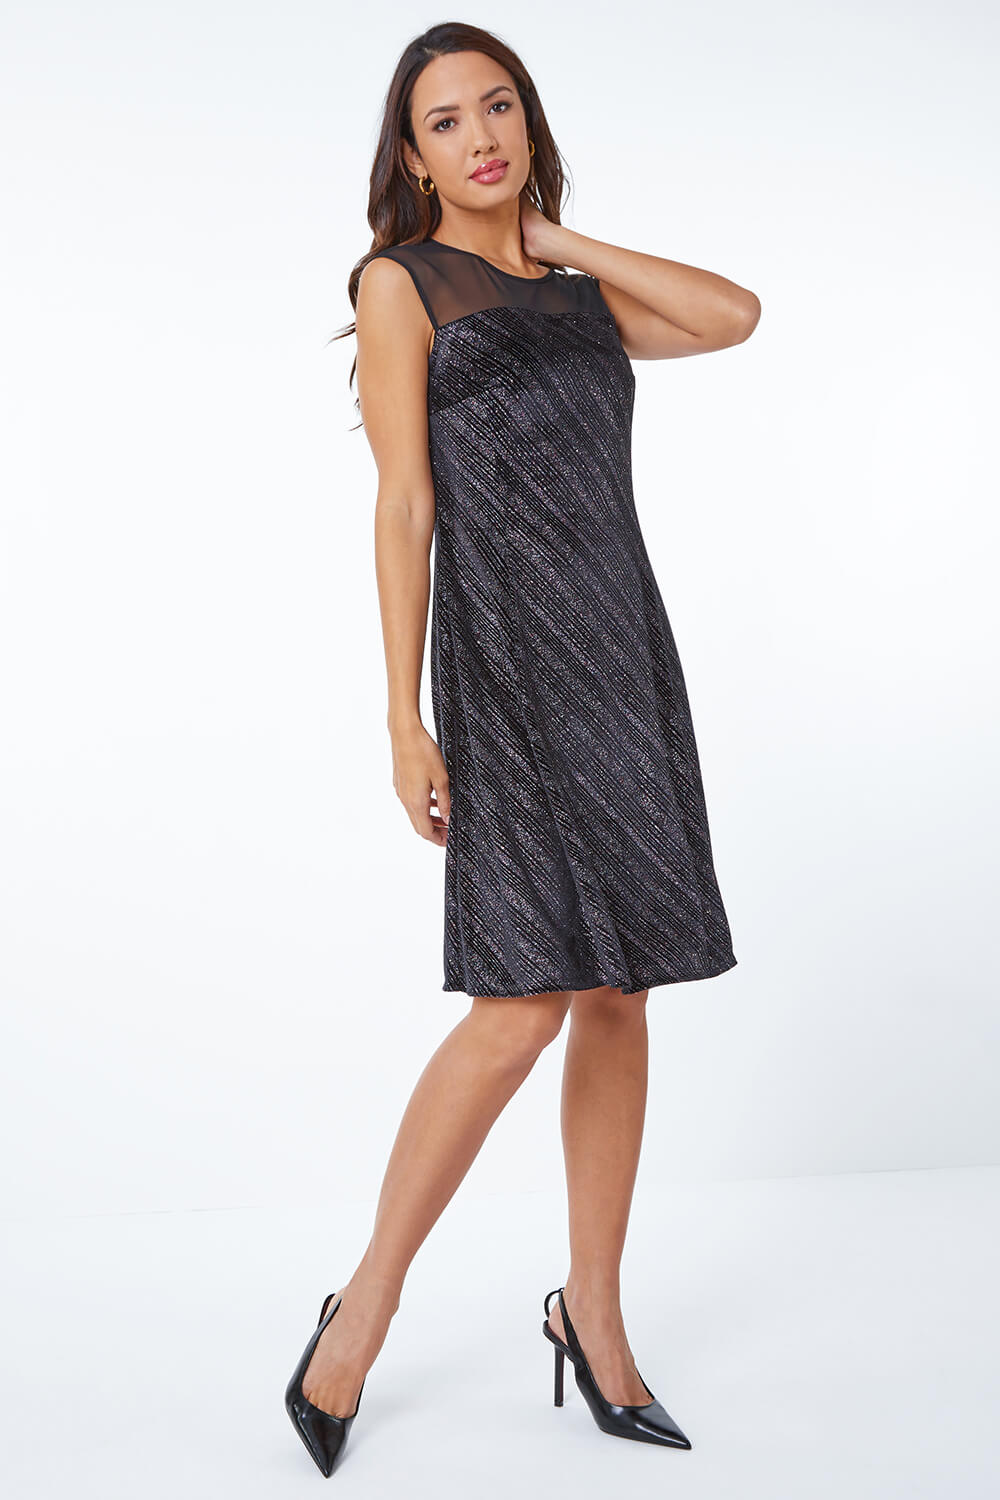 Black Shimmer Velvet Fit & Flare Dress, Image 2 of 5